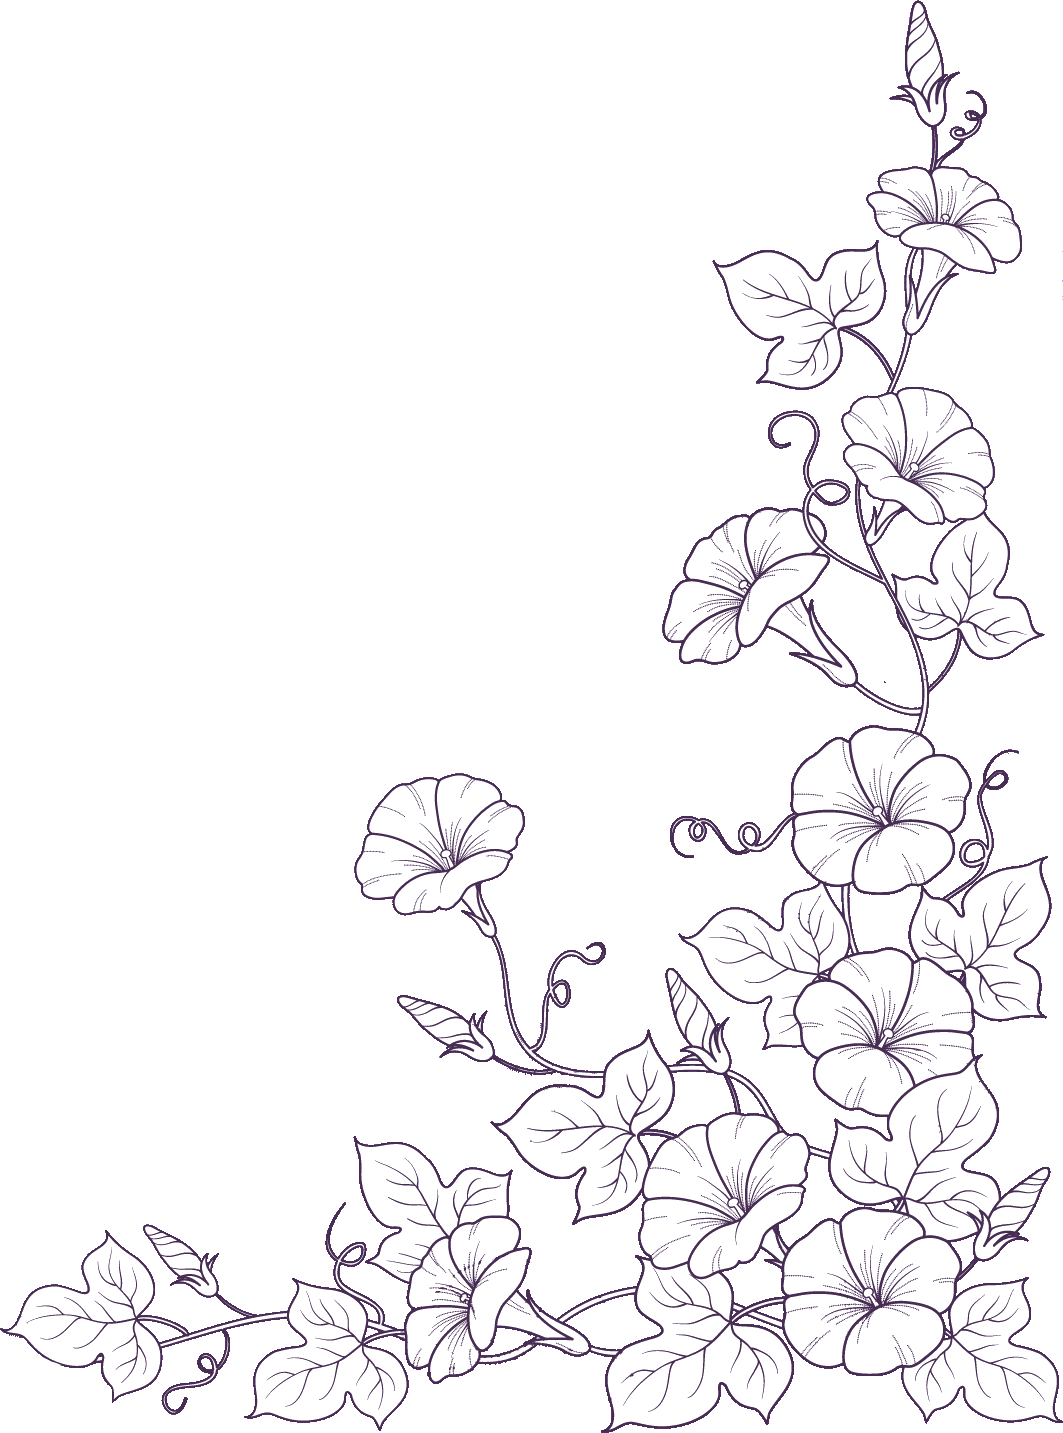 リアルな花のイラスト フリー素材 白黒 モノクロno 11 アサガオ 透過色